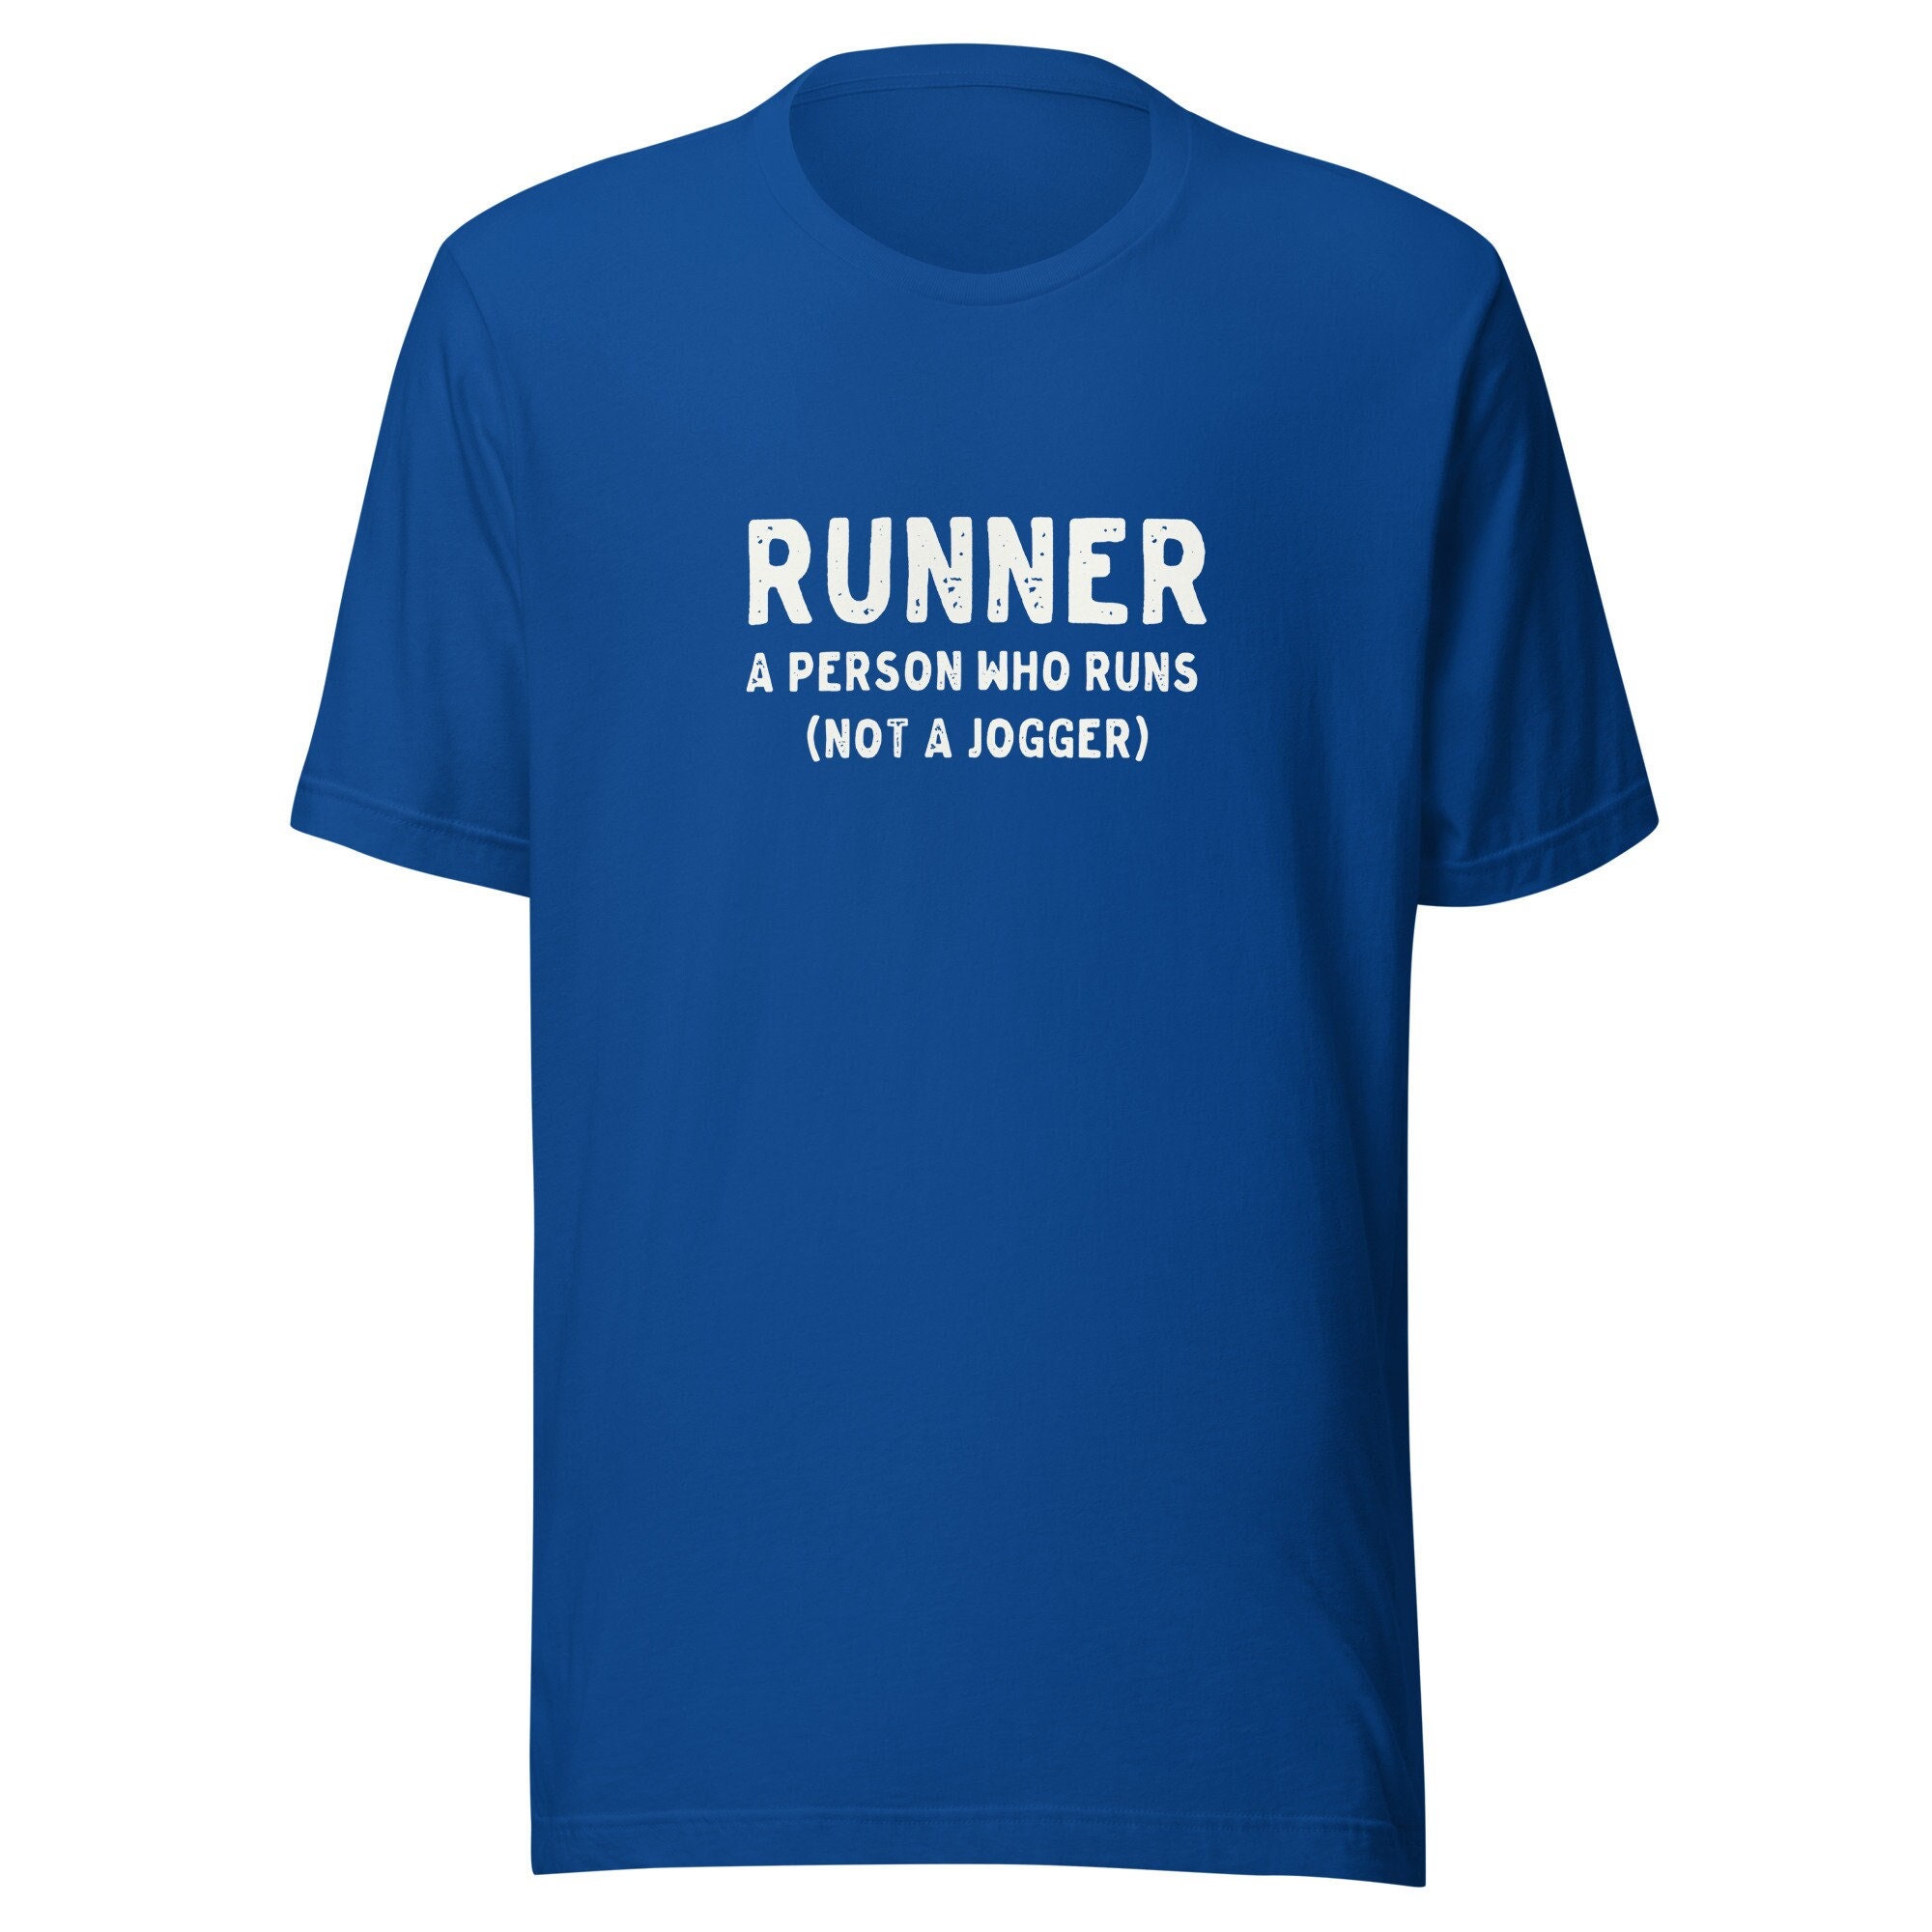 1989 MARATHON RUNNER Jogger Sport Cadeaux Chemises' T-shirt premium Homme